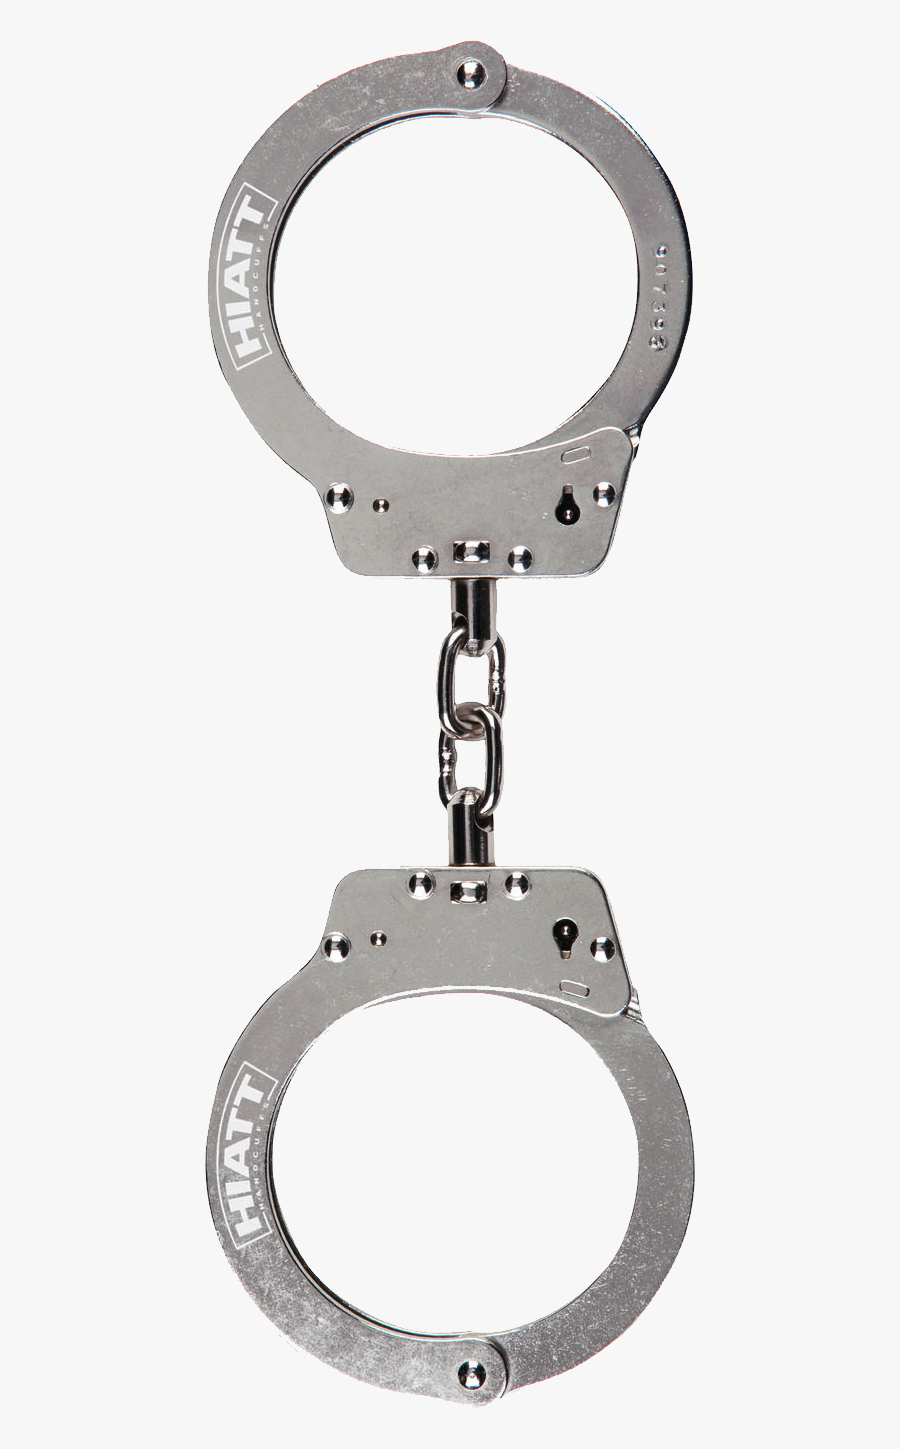 Hand Cuffs Png, Transparent Clipart